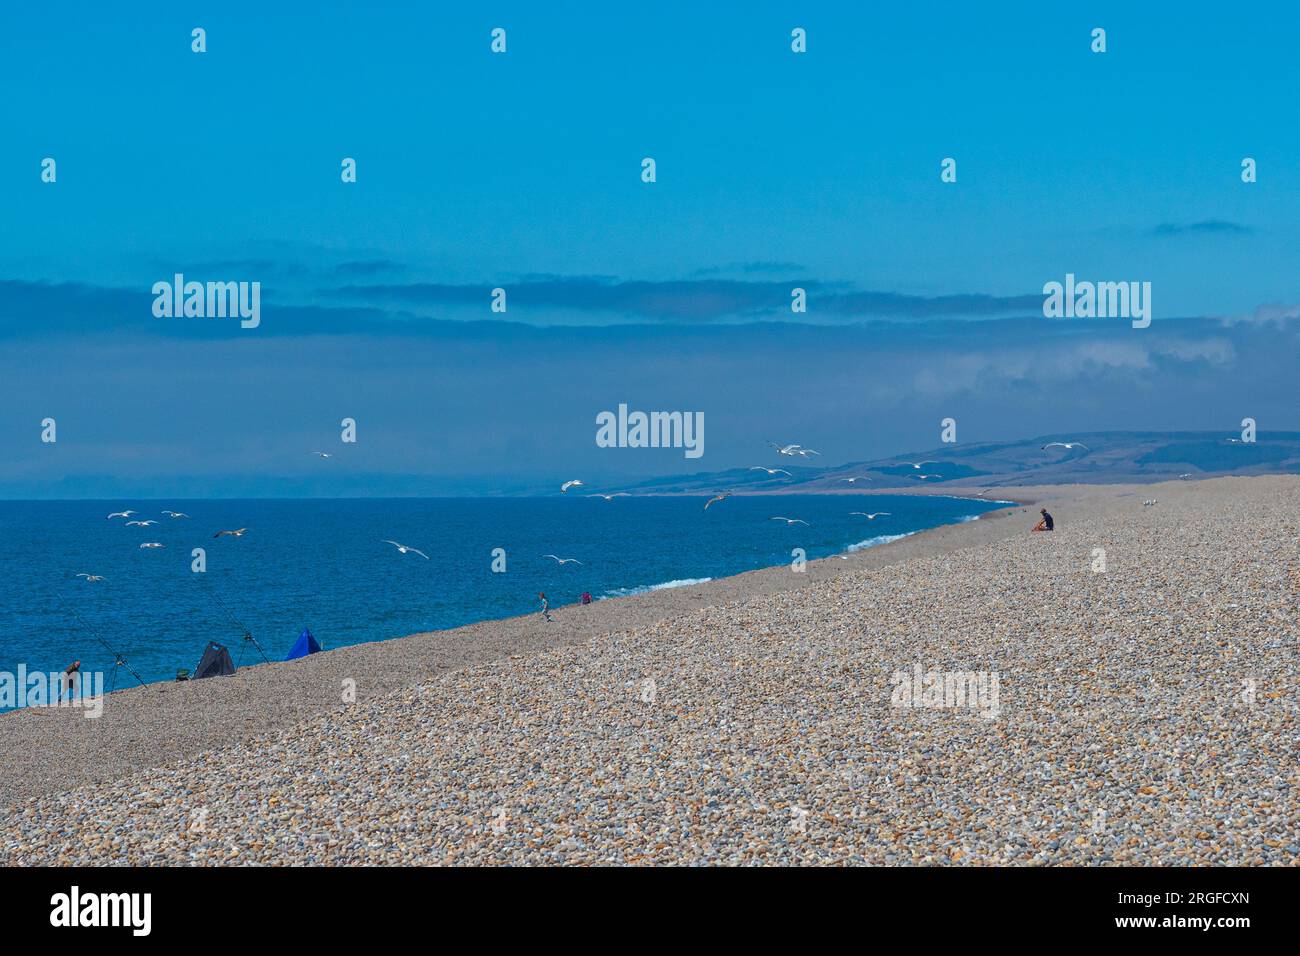 Mouettes volantes et gens pêchant sur la vaste étendue de plage de galets, plage de Chesil, sur la côte sud-ouest de l'Angleterre, Dorset, Angleterre, Royaume-Uni. Banque D'Images